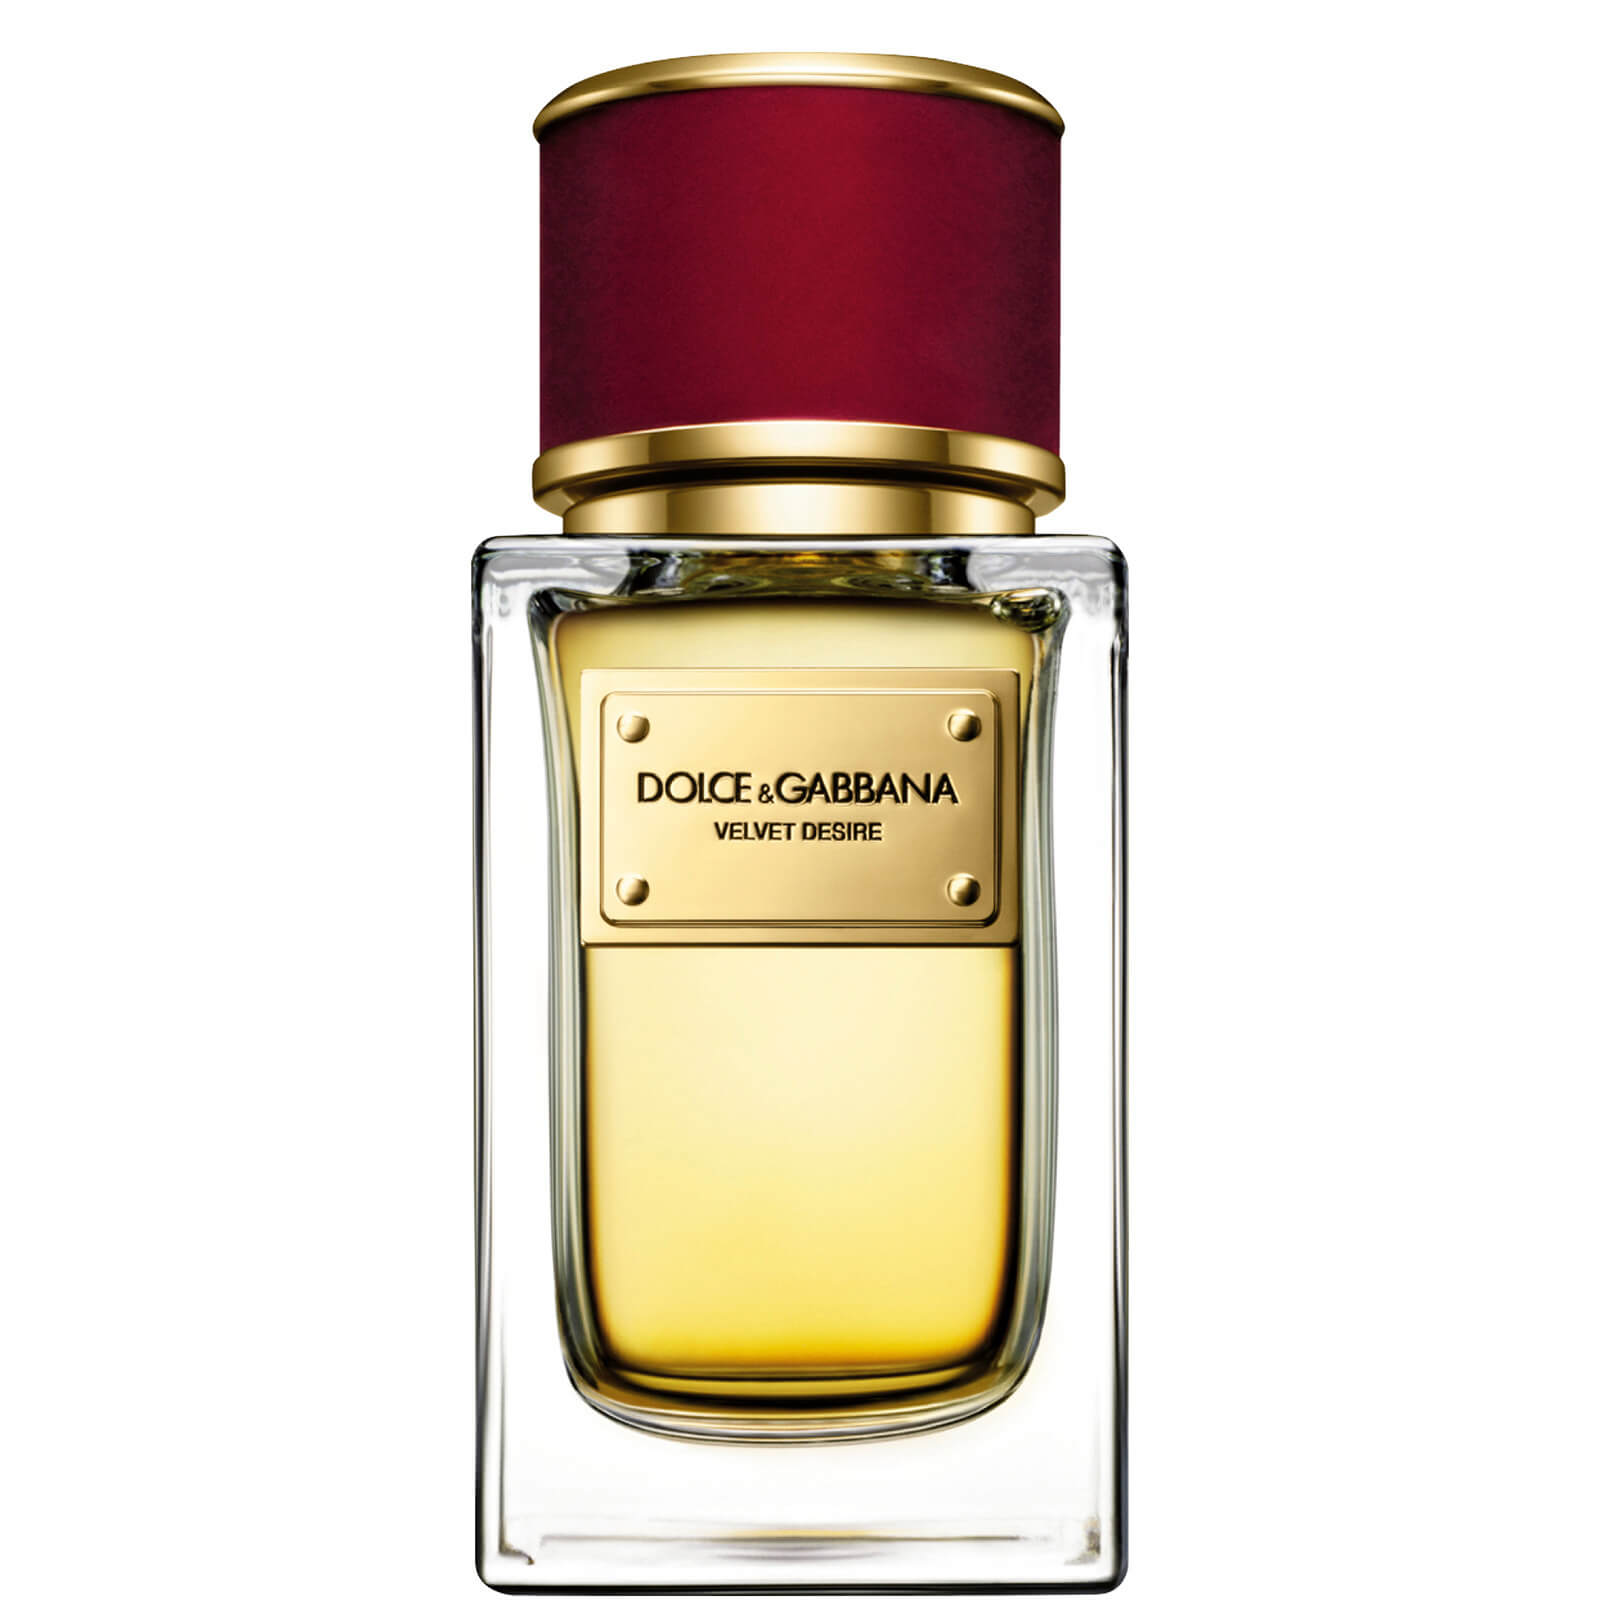 Dolce&Gabbana Velvet Collection Desire Eau de Parfum 50ml